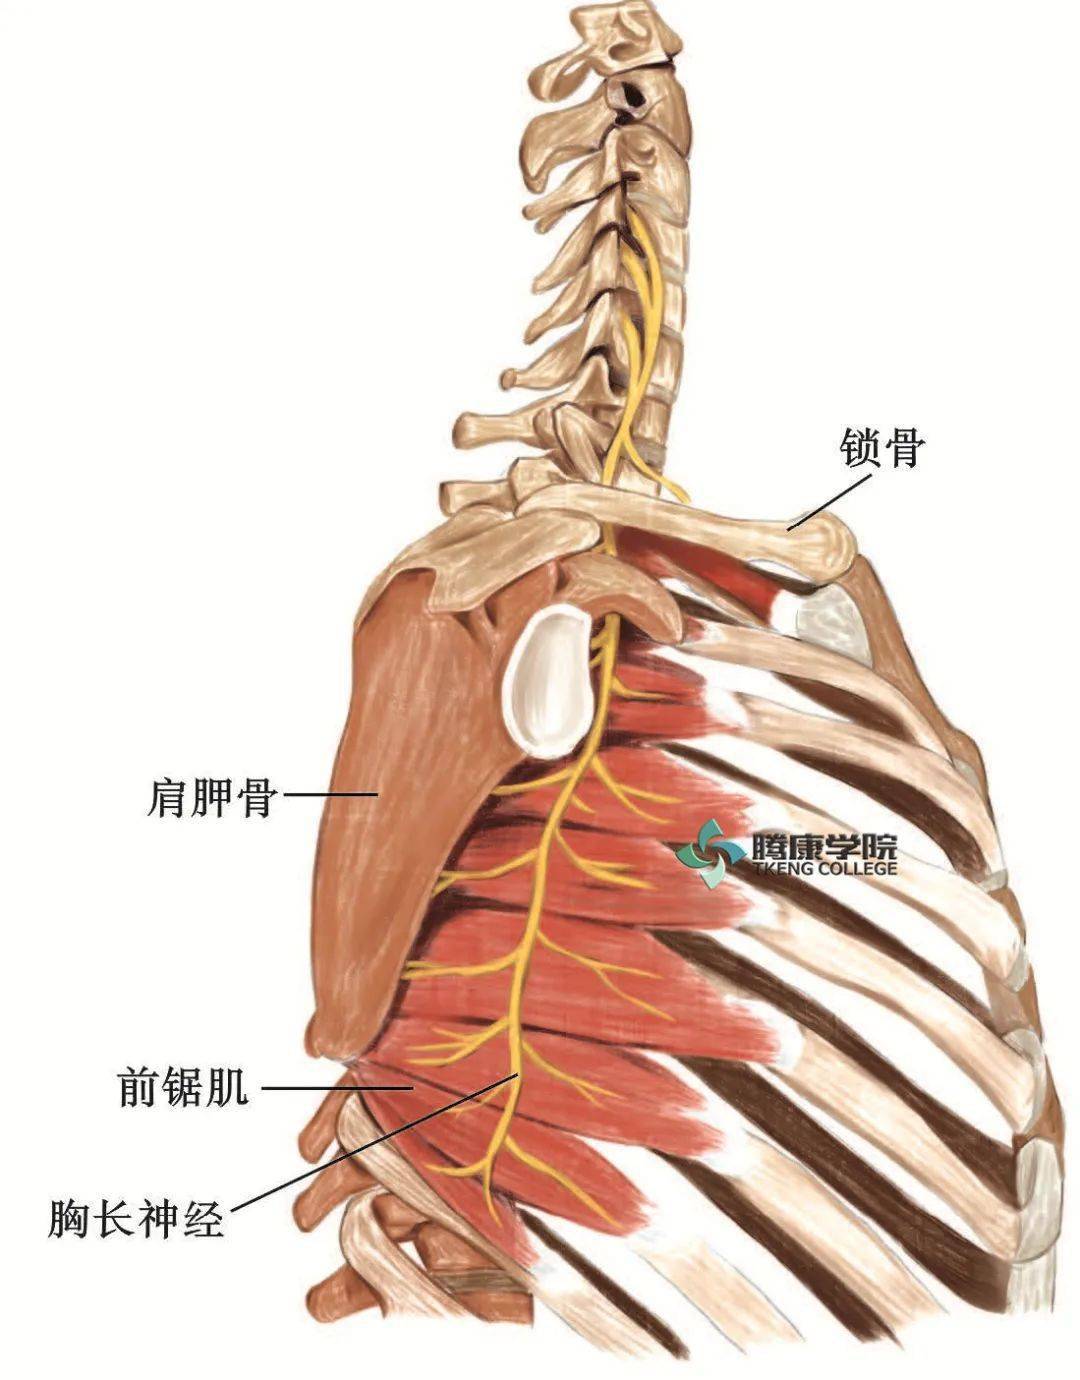 臂丛锁骨上部分支概述与治疗定点汇总